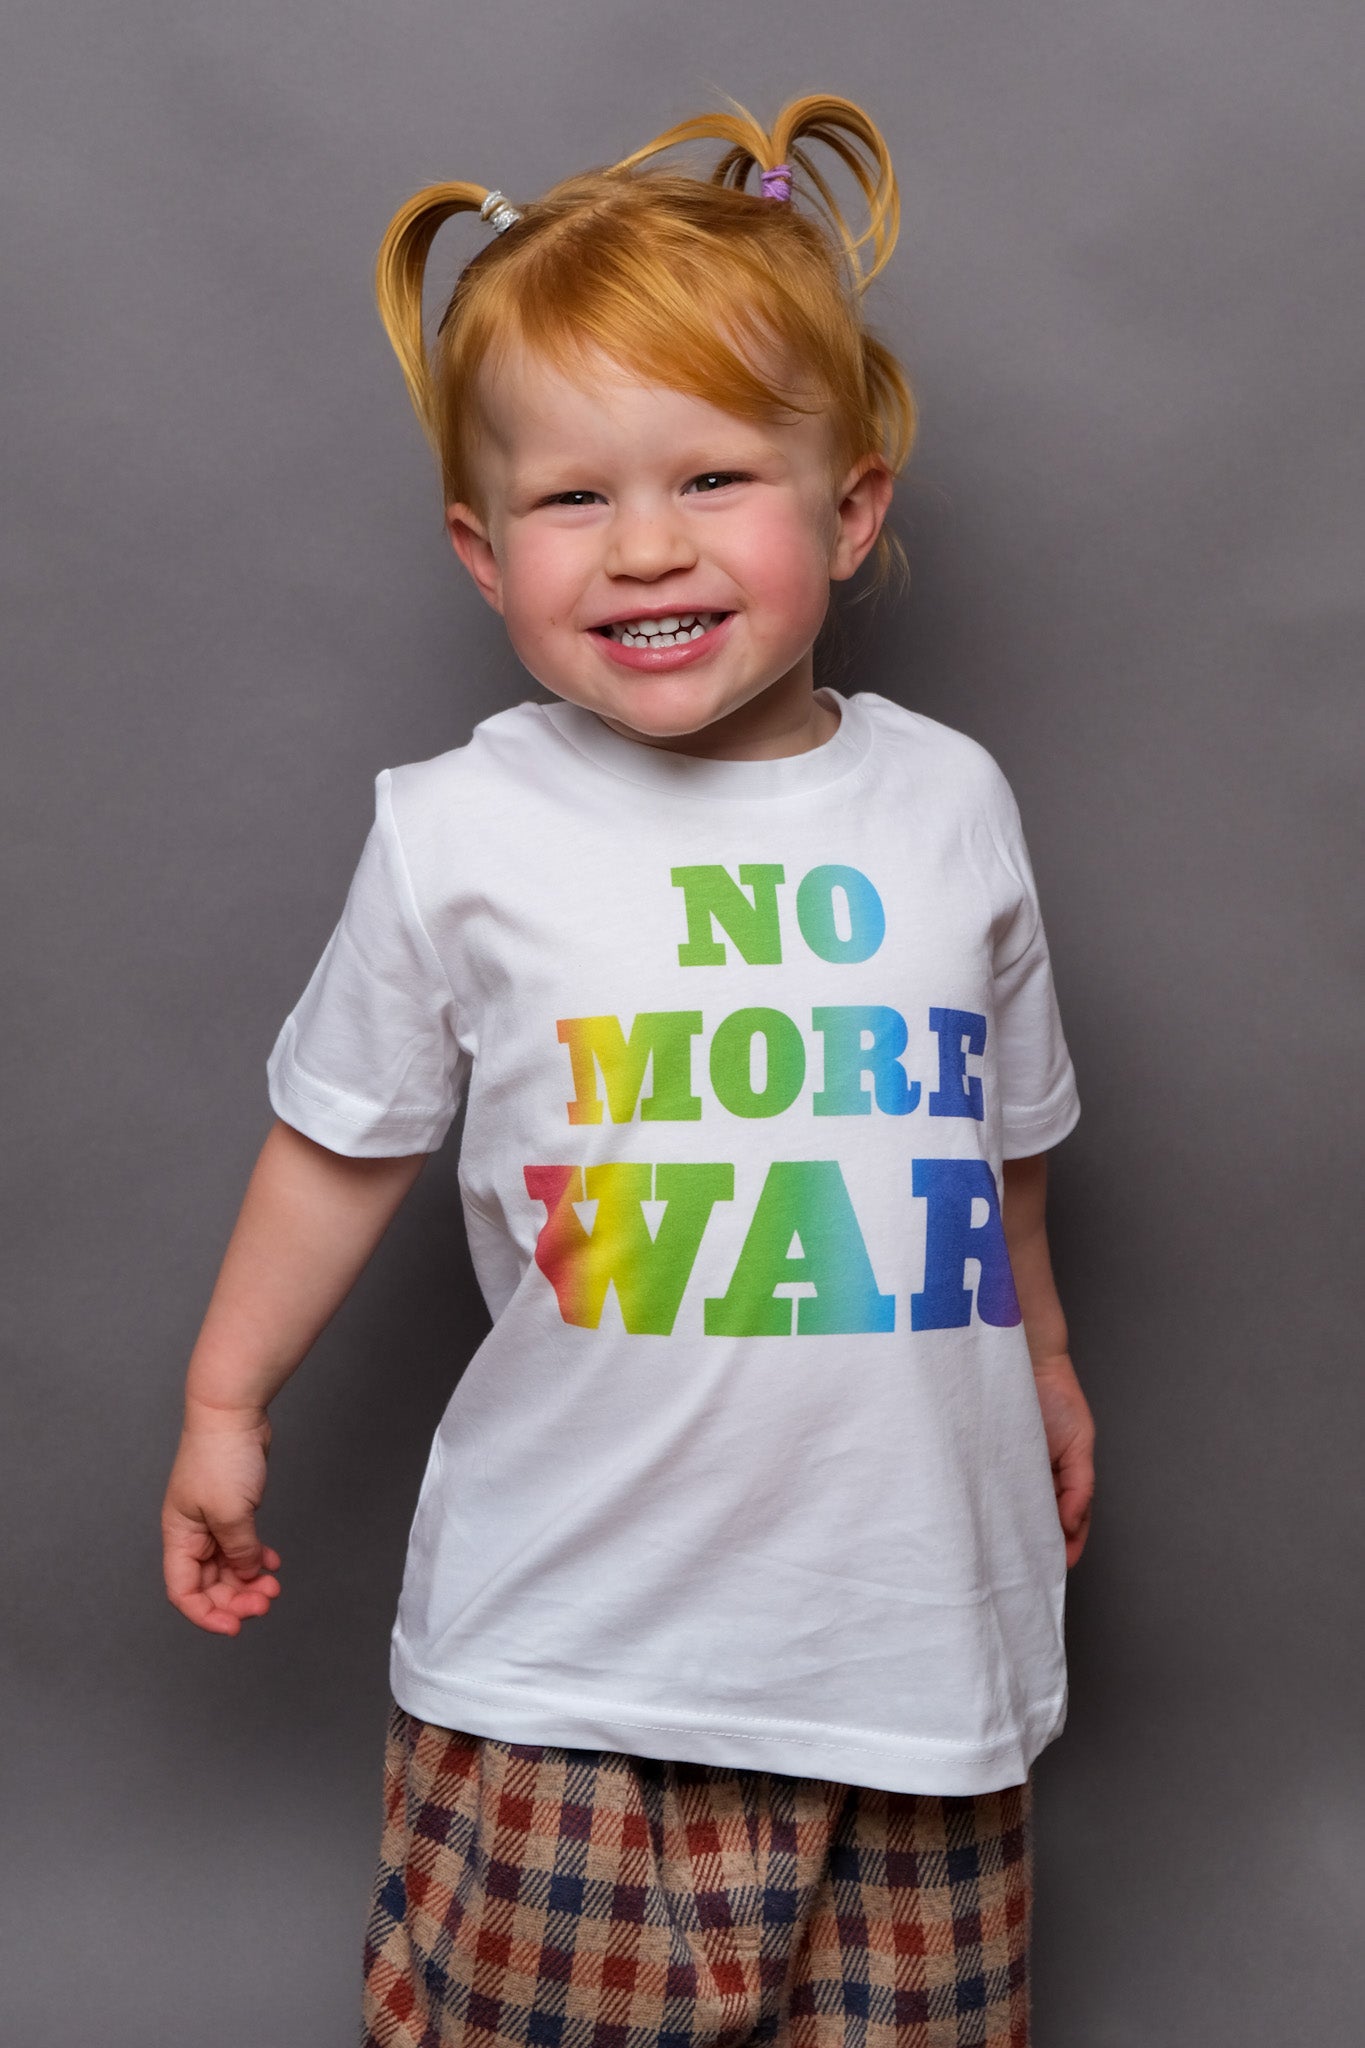 No more war kids t-shirt